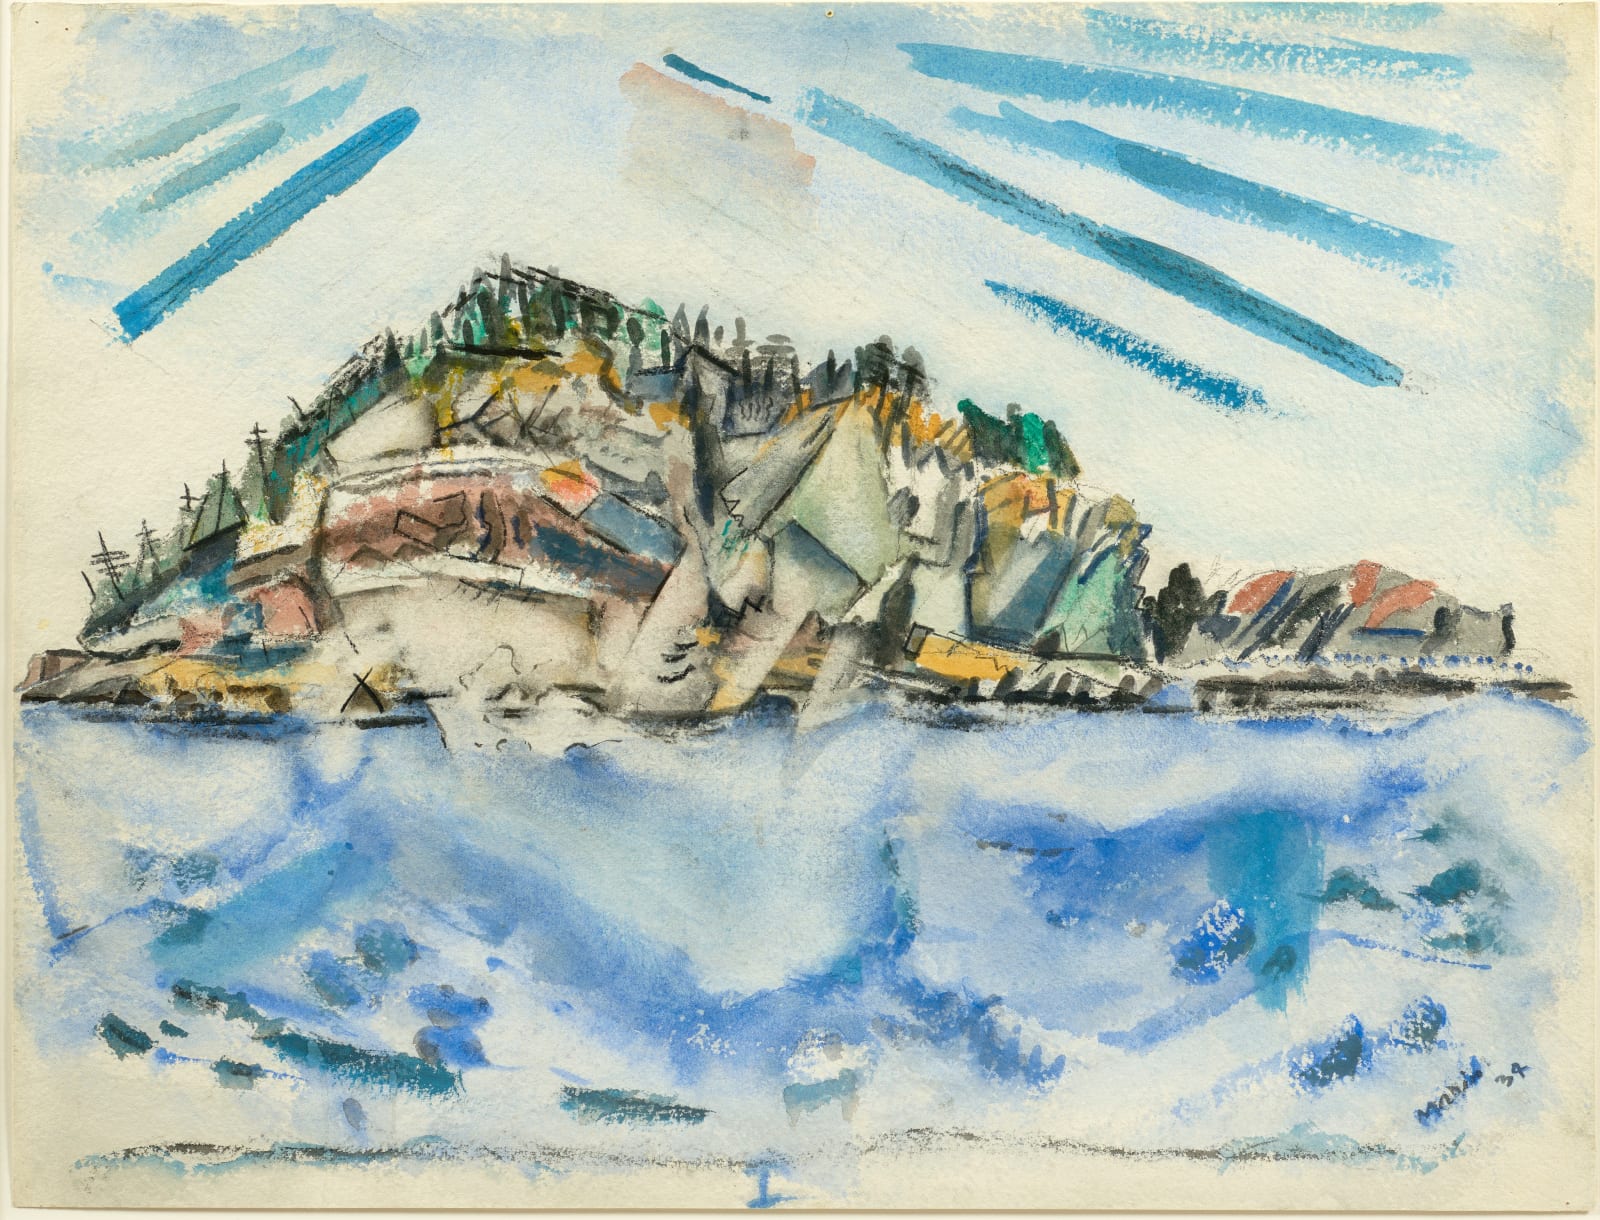 John Marin, Island (Ship's Stern), 1934